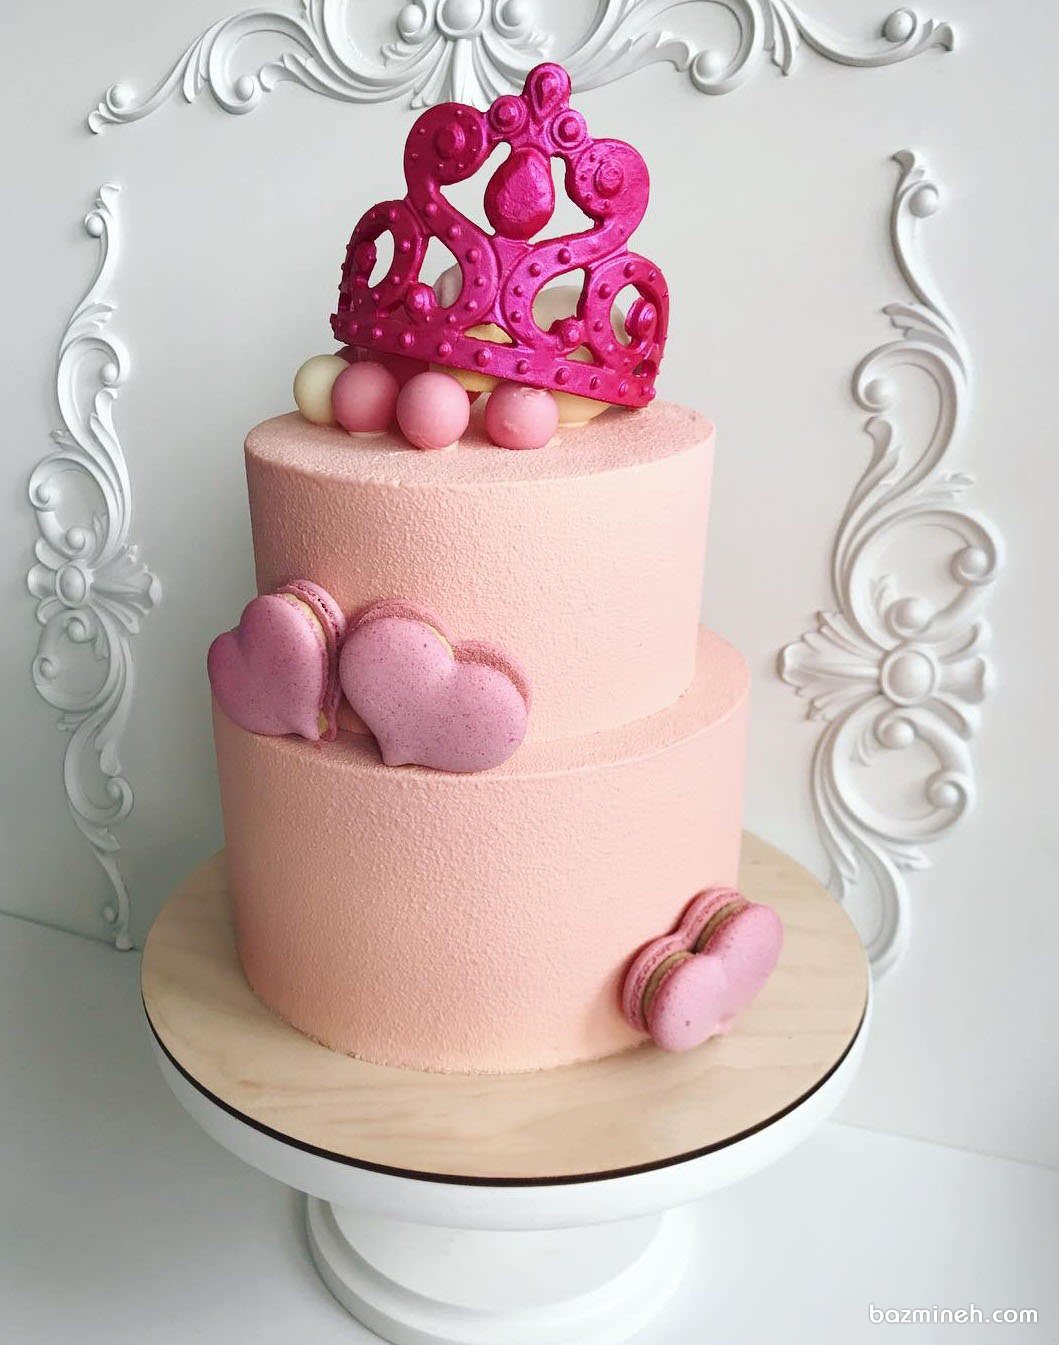 کیک دو طبقه جشن تولد دخترونه با تم ملکه صورتی تزیین شده با ماکارون های قلبی